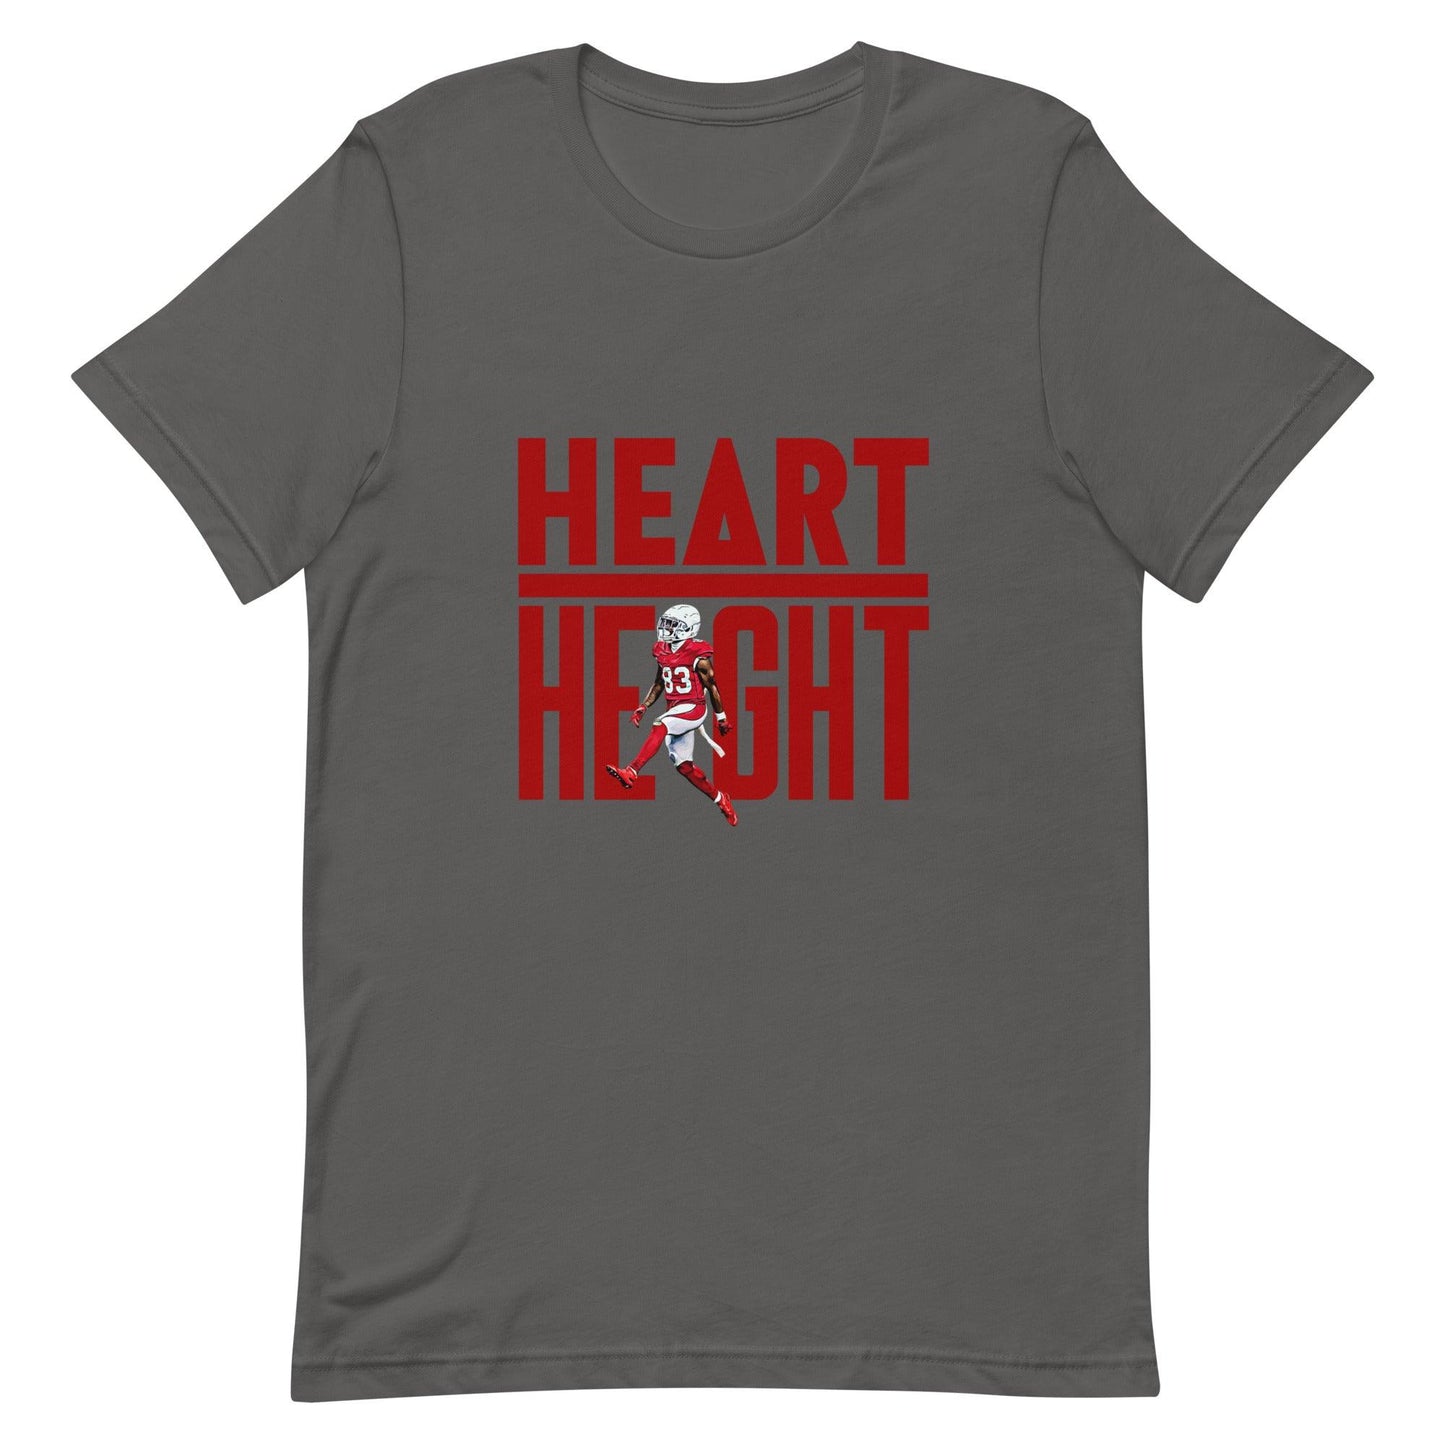 Greg Dortch "Heart Over Height" t-shirt - Fan Arch